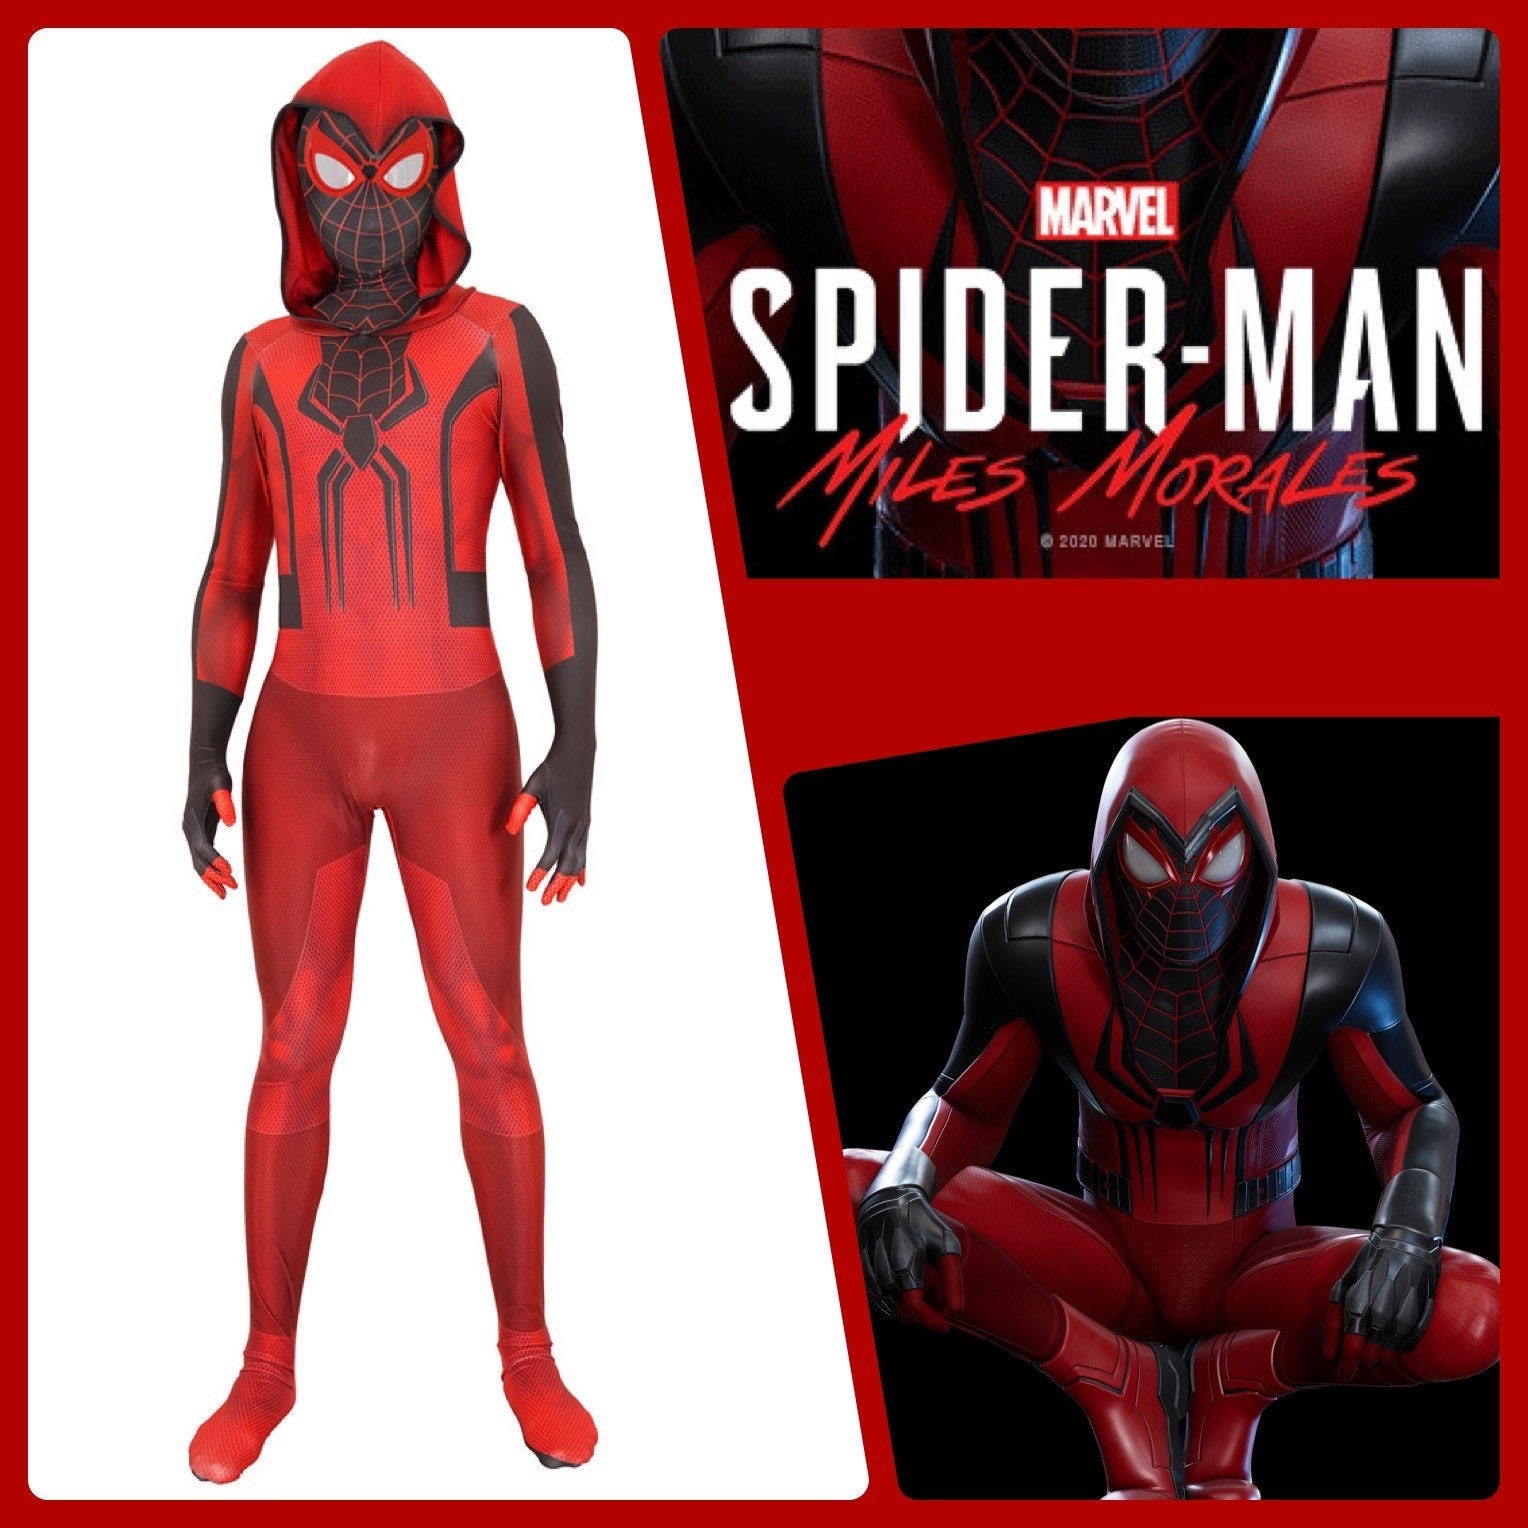 Costume De Super-héros Spiderman Pour Enfants, Ensemble Body De